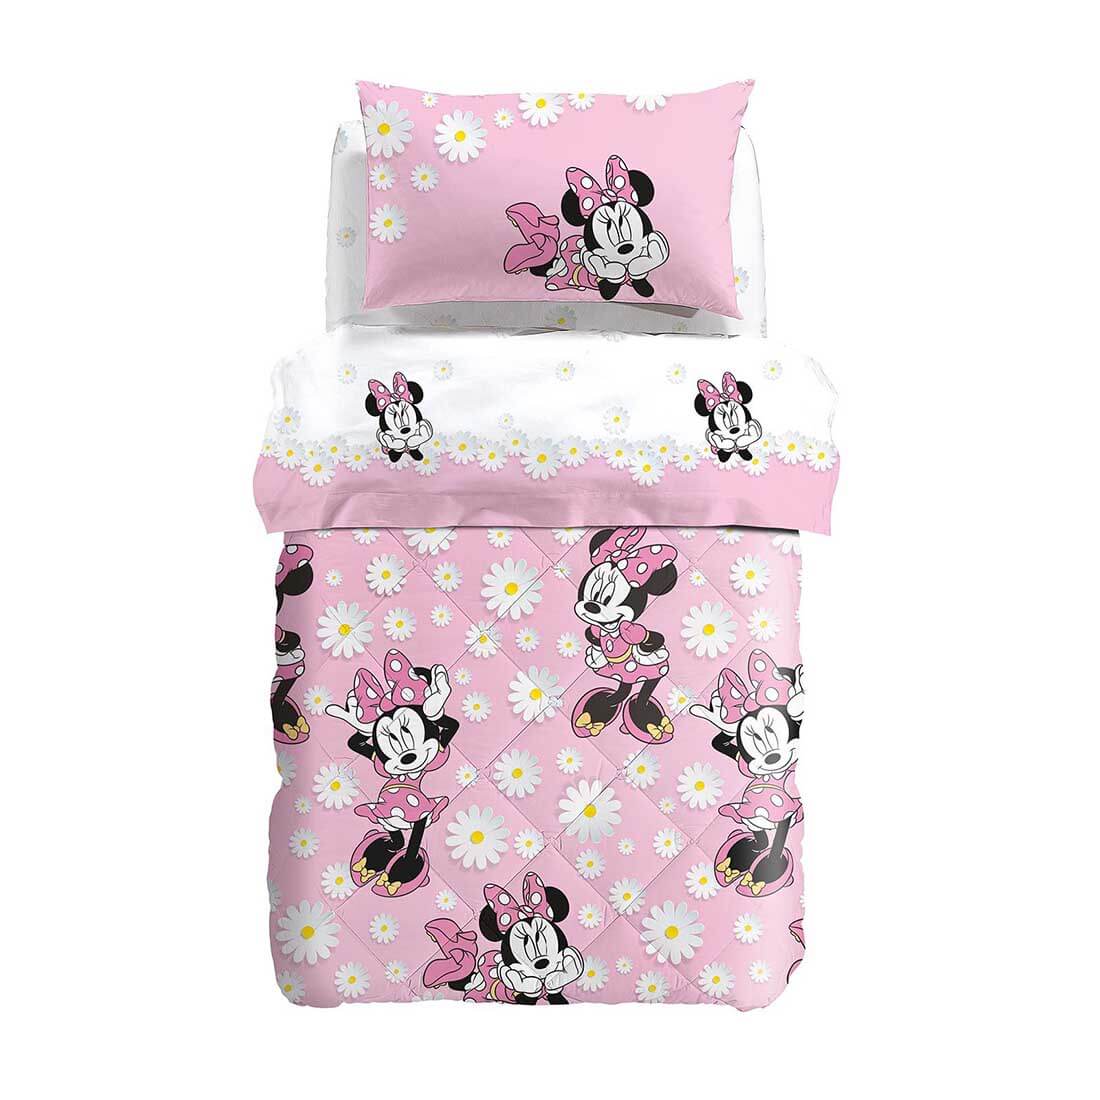 Completo lenzuola Minnie Margherite caleffi disney cotone letto singolo e piazza e mezza bambina con fiori. colore bianco e rosa.